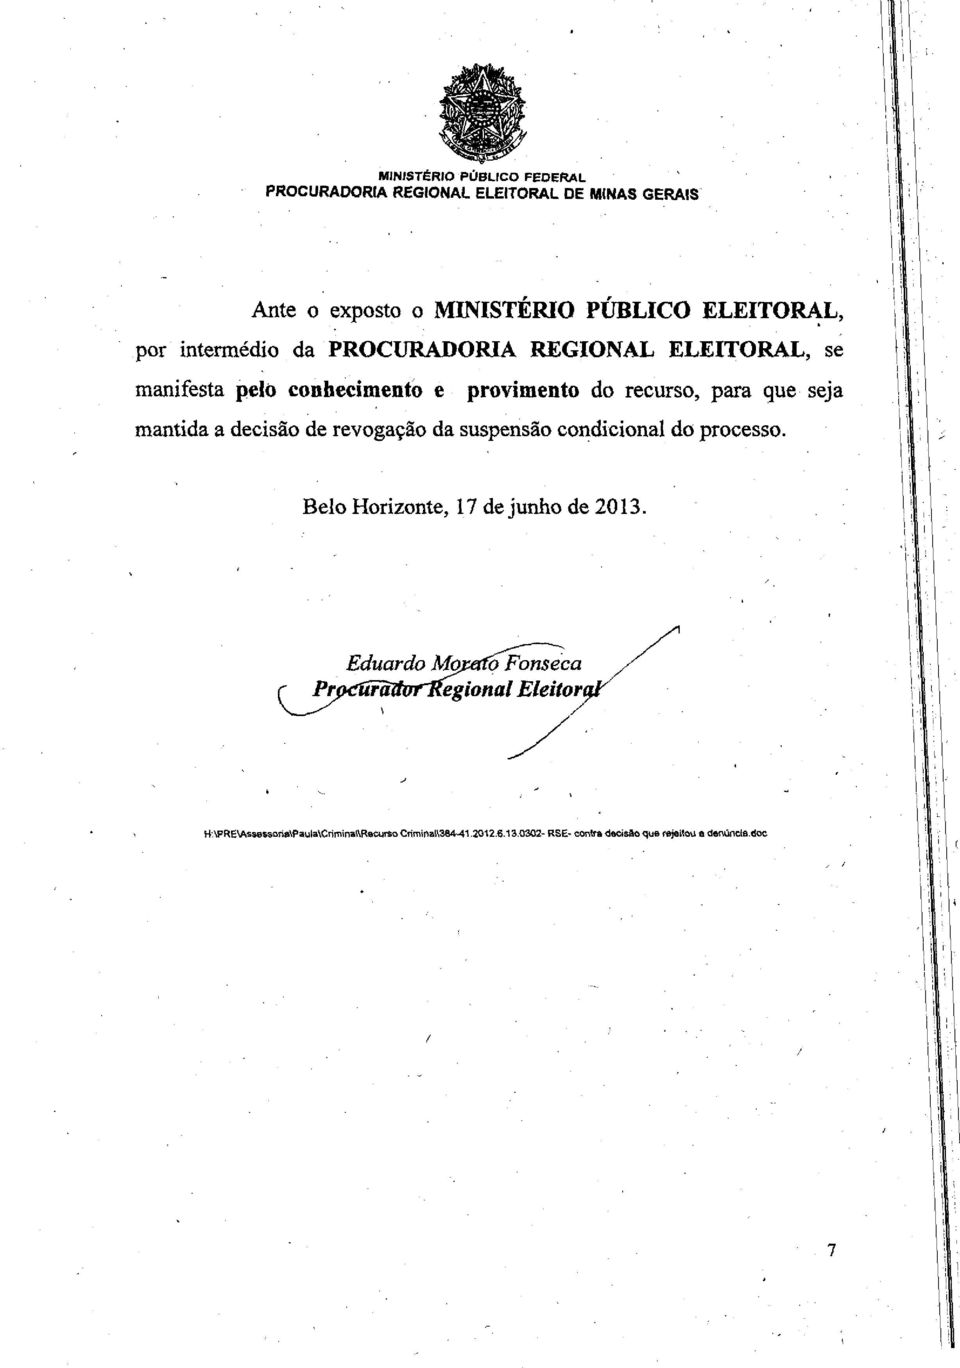 decisa'o de revogacao da suspensao condicional do processo. Belo Horizonte, 17 de junho de 2013.